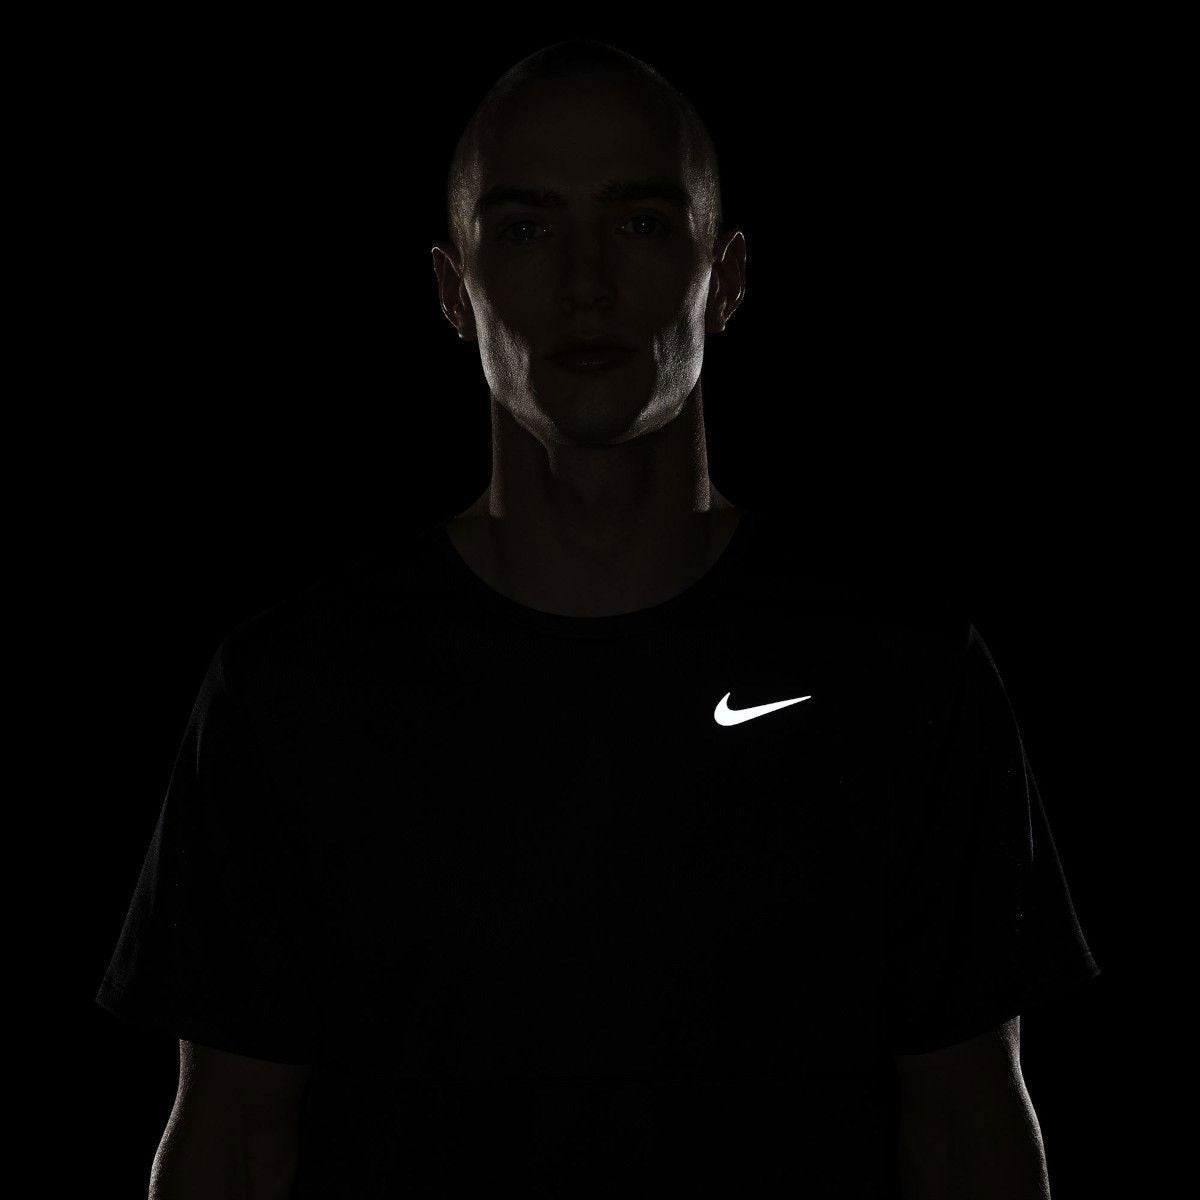 Nike Men's Breathe Running Top - KickzStore